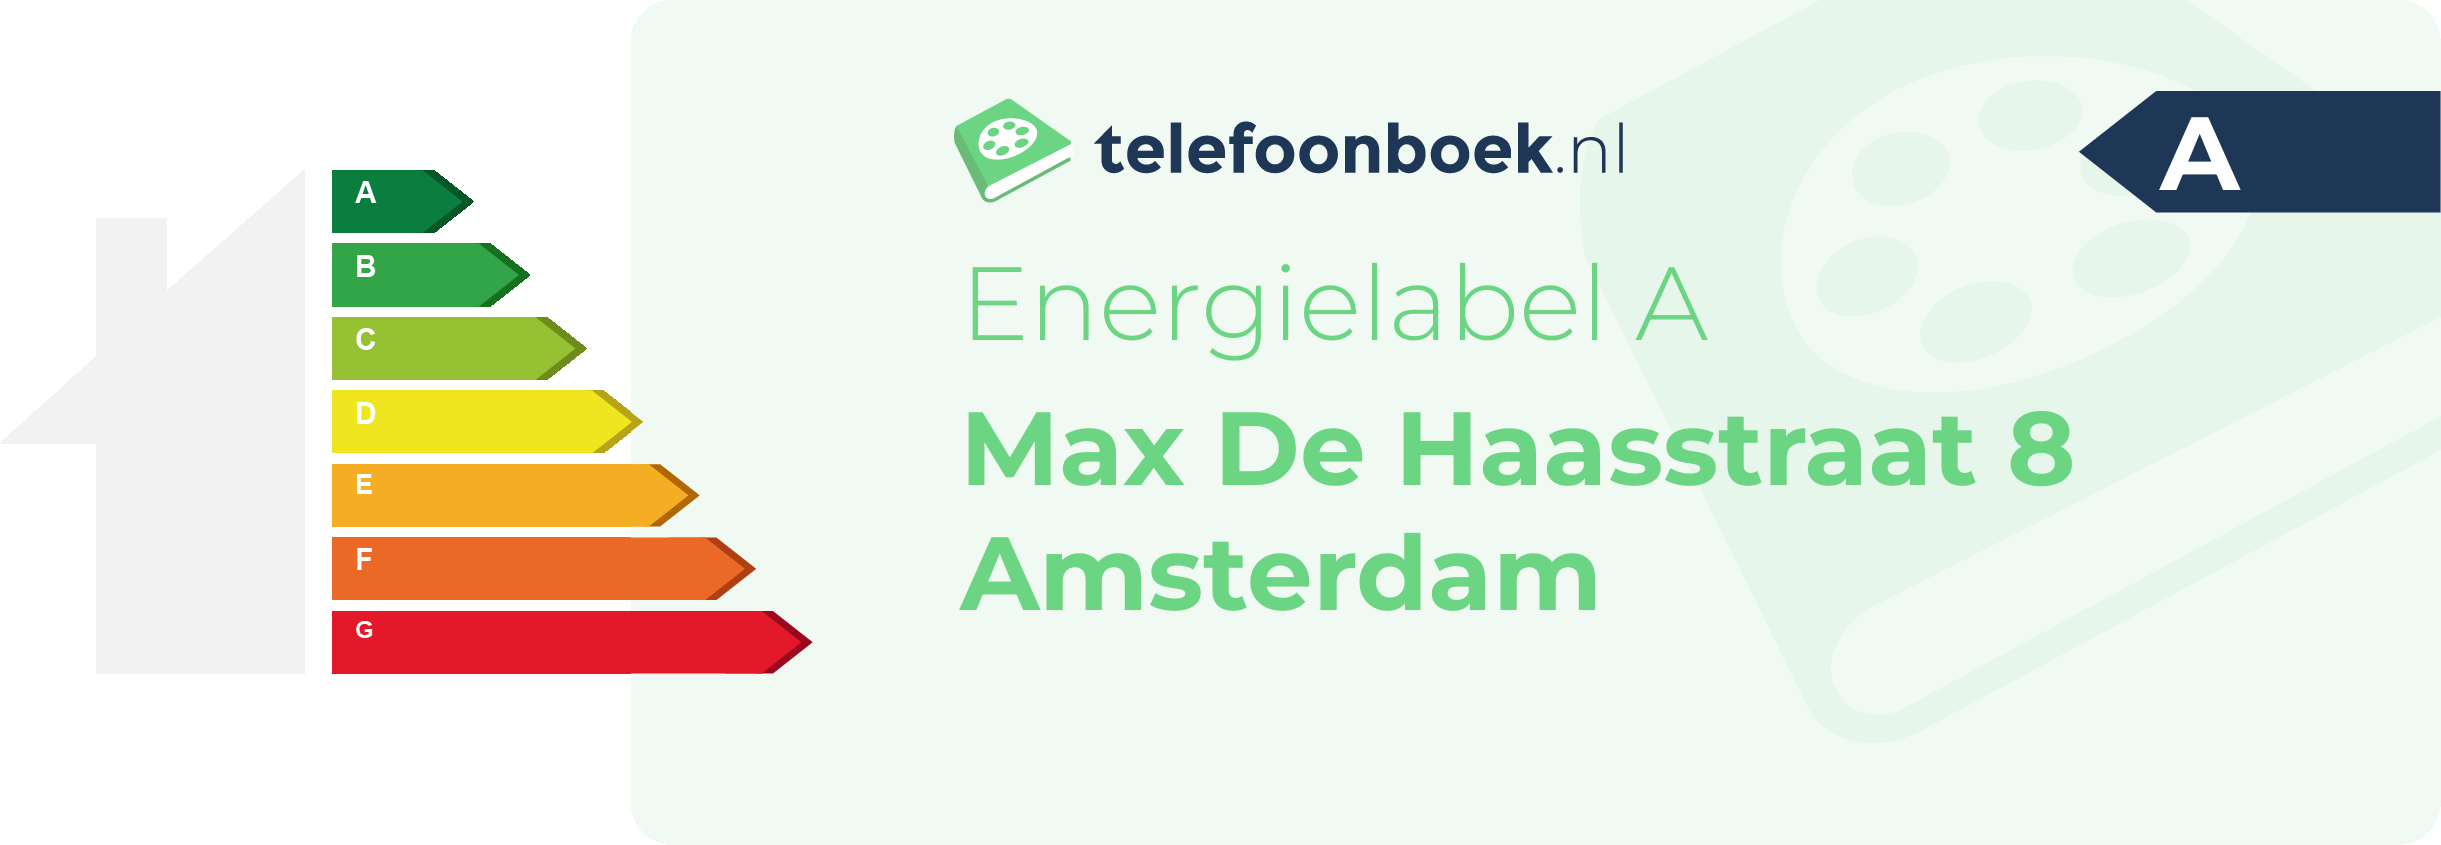 Energielabel Max De Haasstraat 8 Amsterdam